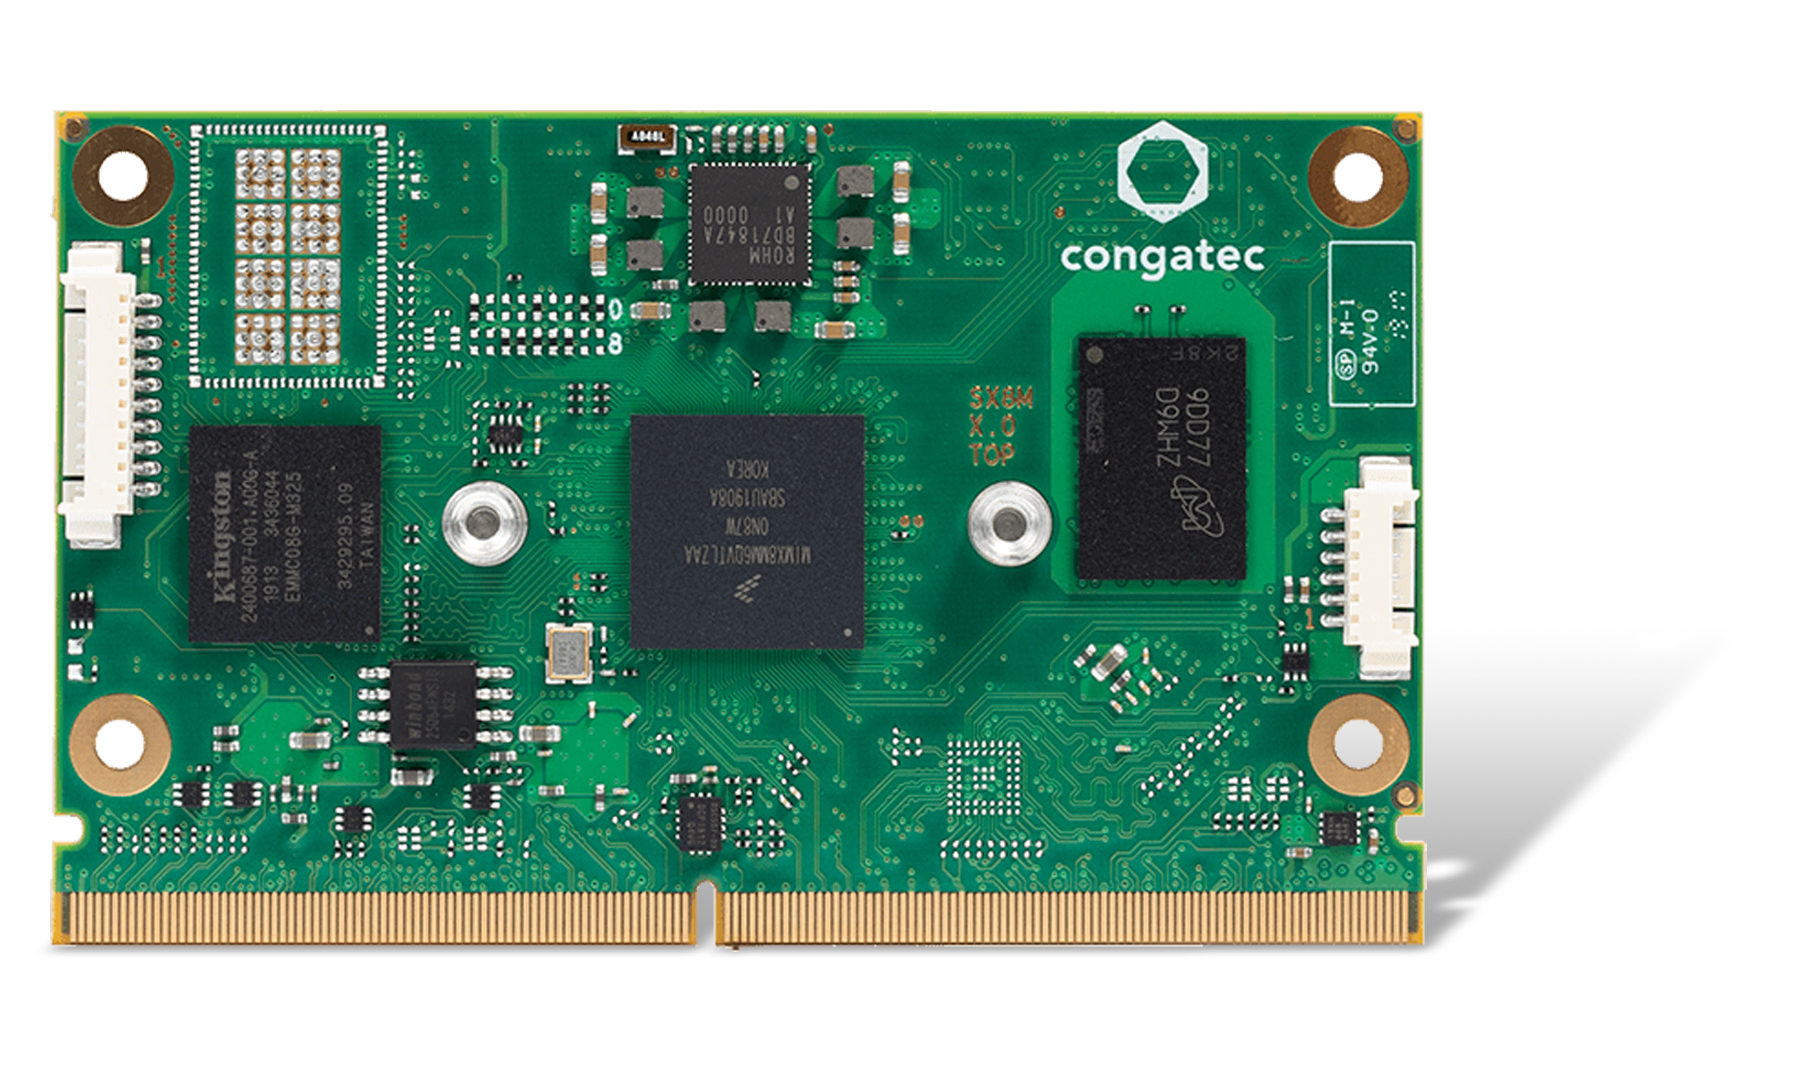 New congatec SMARC module with NXP i.MX 8M Mini processor